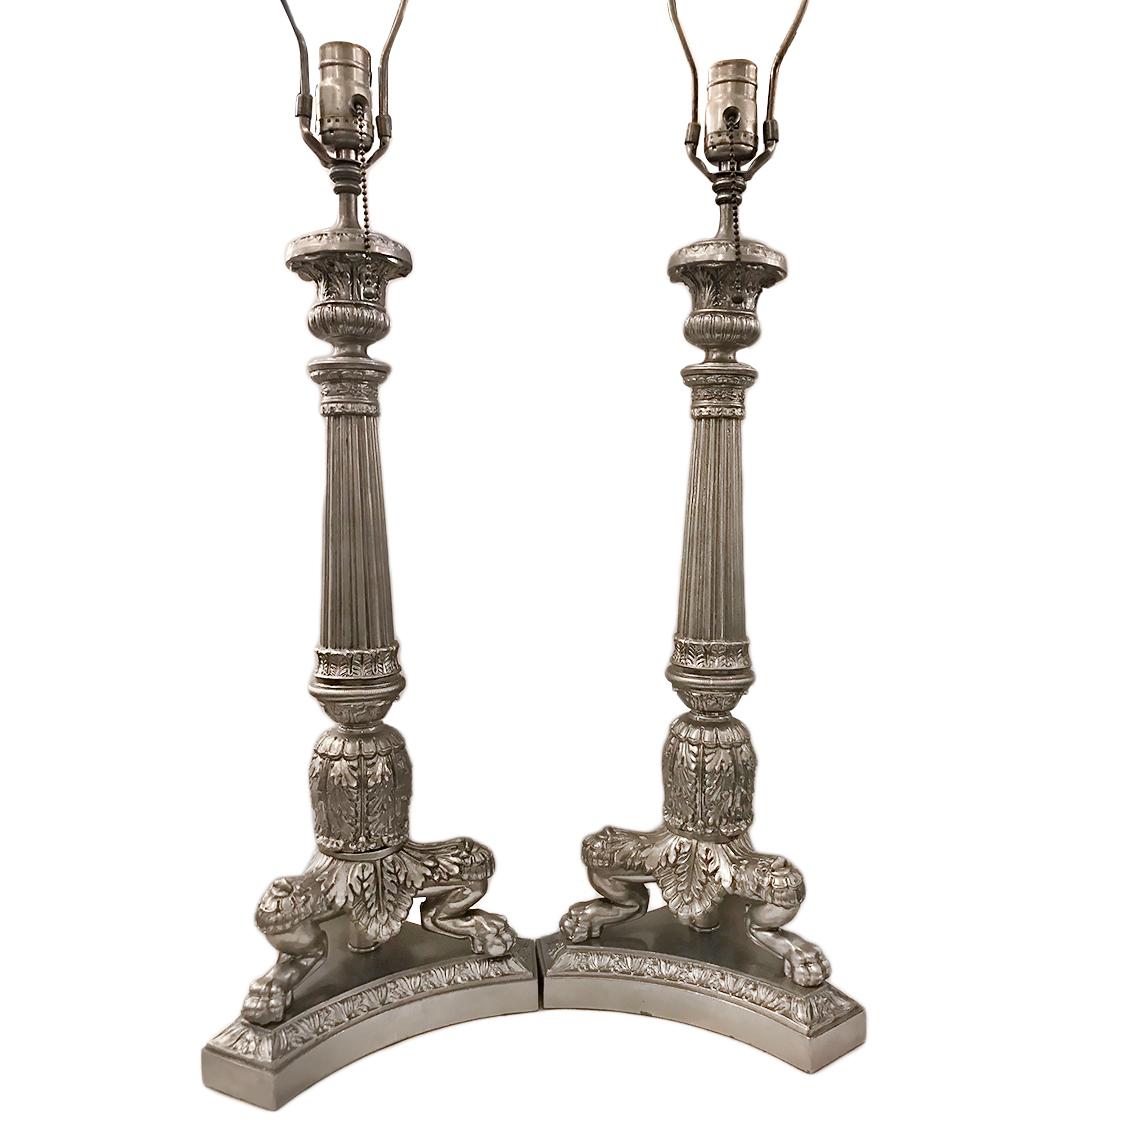 Une paire de chandeliers français à trois pieds en nickel, datant des années 1930, câblés comme des lampes avec des détails complexes dans le style Empire.

Mesures :
Hauteur du corps : 20
Profondeur : 8